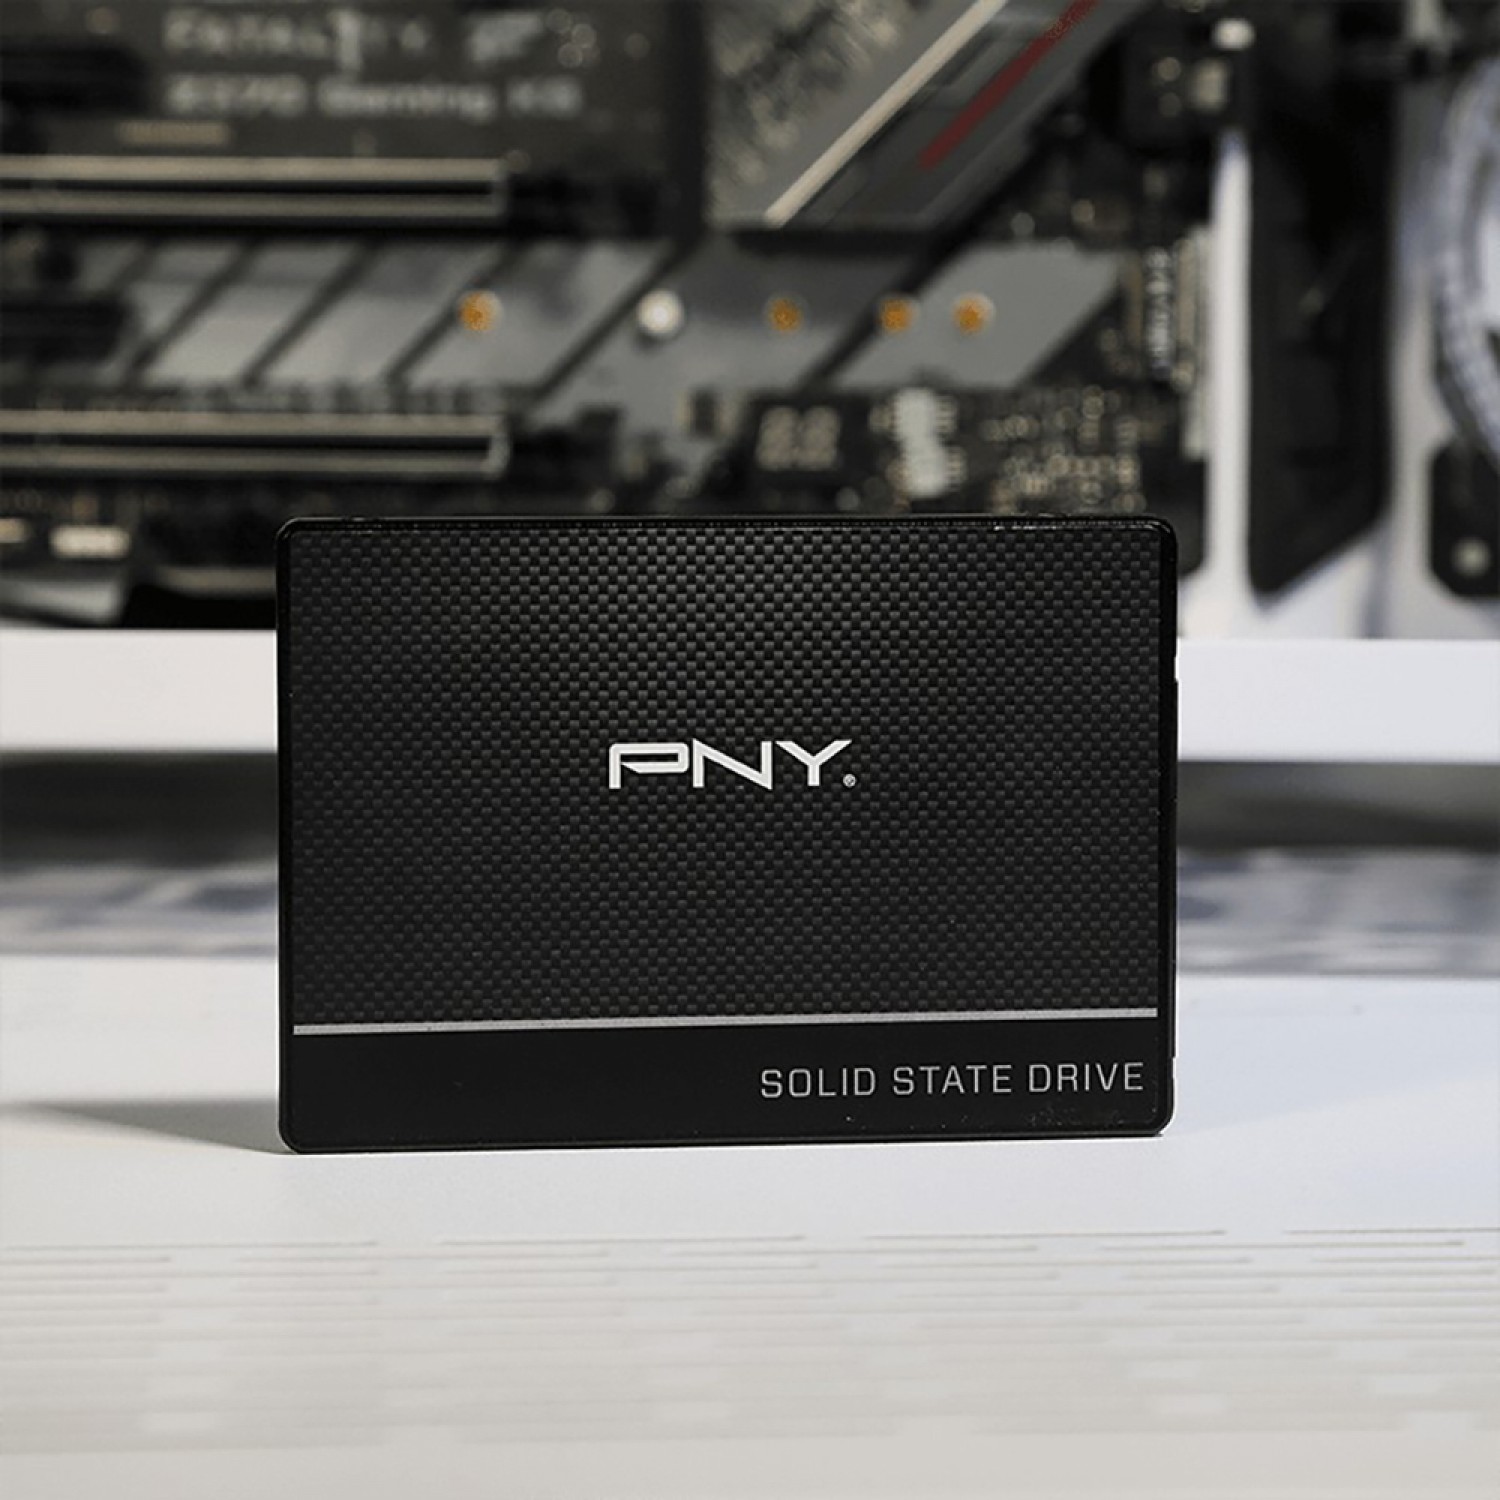 اس اس دی PNY CS900 120GB